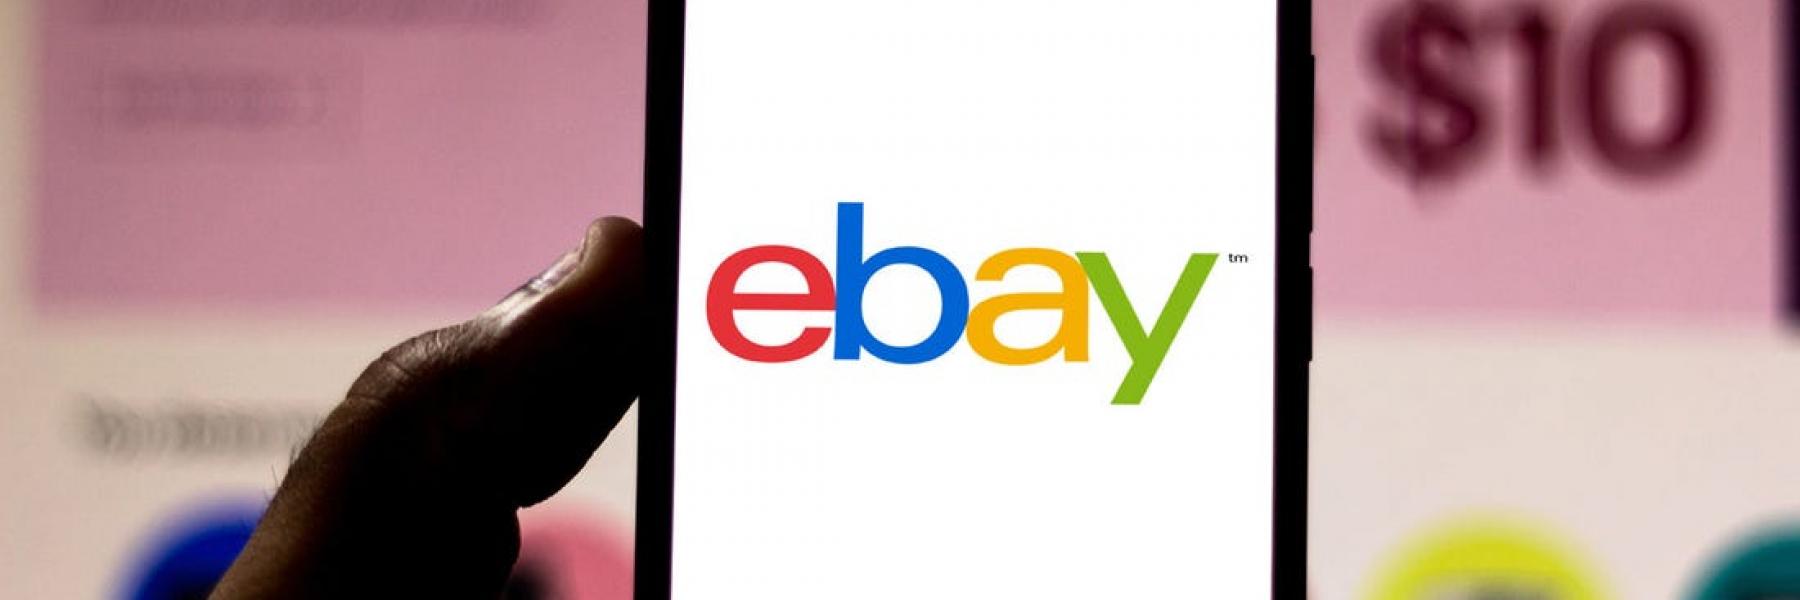 بيع أقدم موقع على الإنترنت "eBay" مقابل 9 مليار دولار أمريكي